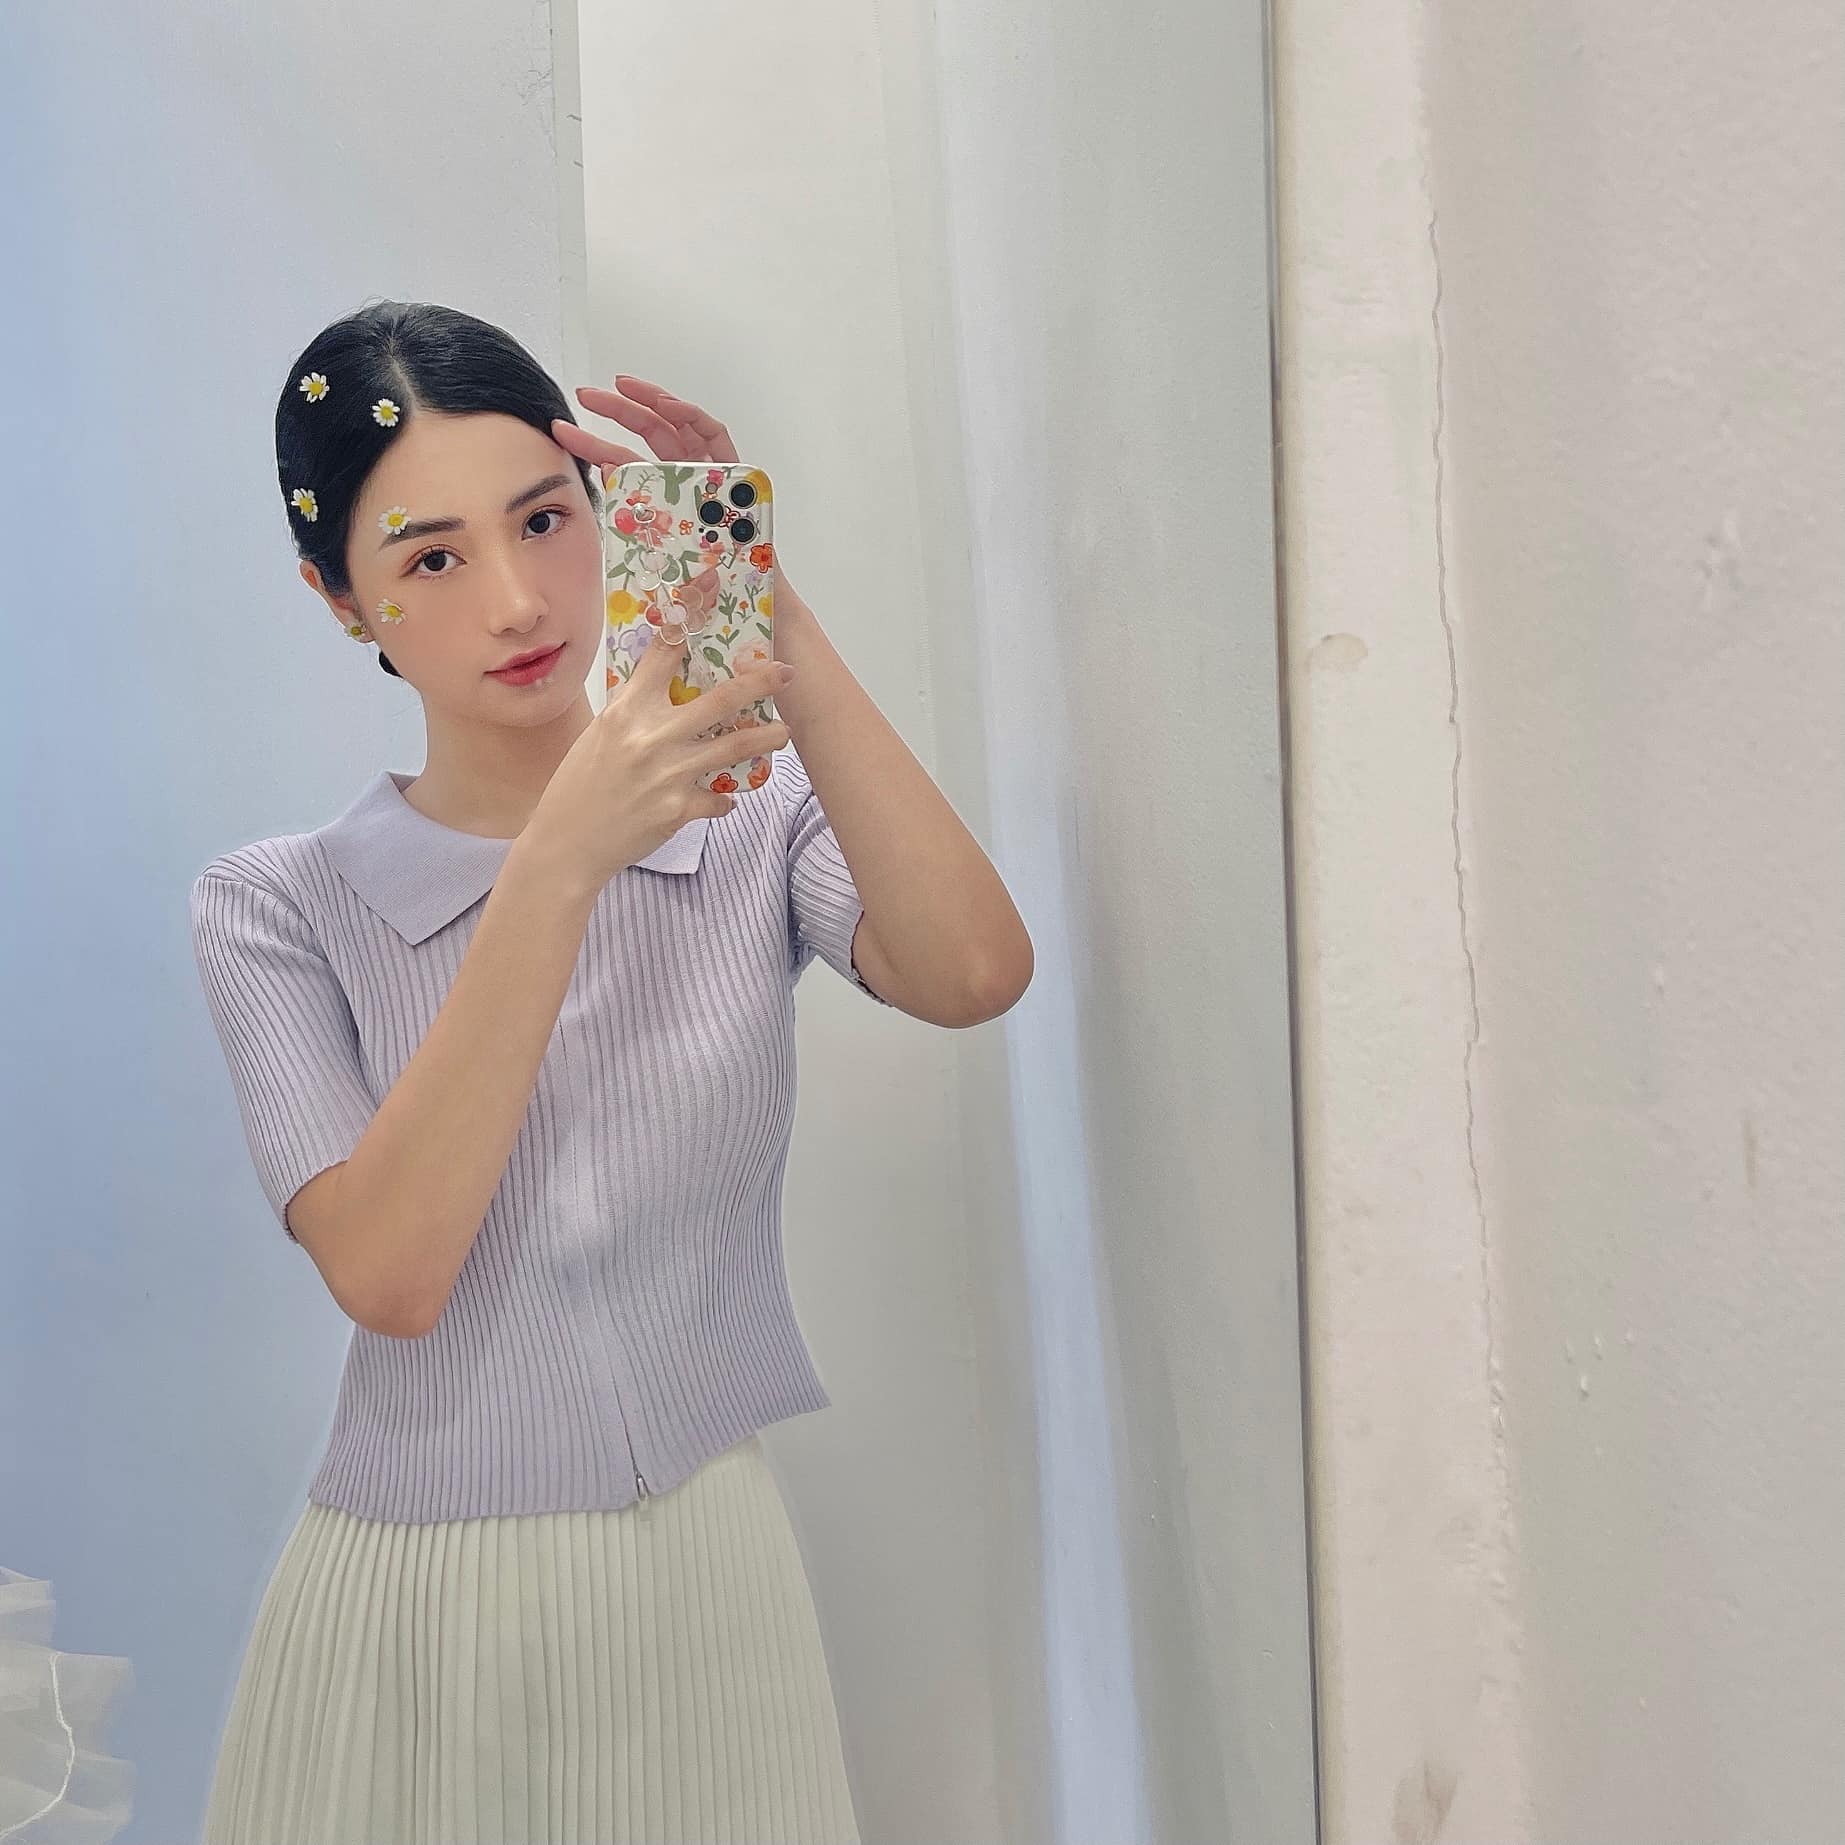 Sau nhiều hình ảnh sexy, Jun Vũ bỗng hóa dịu dàng với trang phục tông pastel tím, trắng. Cô vui vẻ: 'Em là lá em là hoa, em là hoa lá hoa là em'.